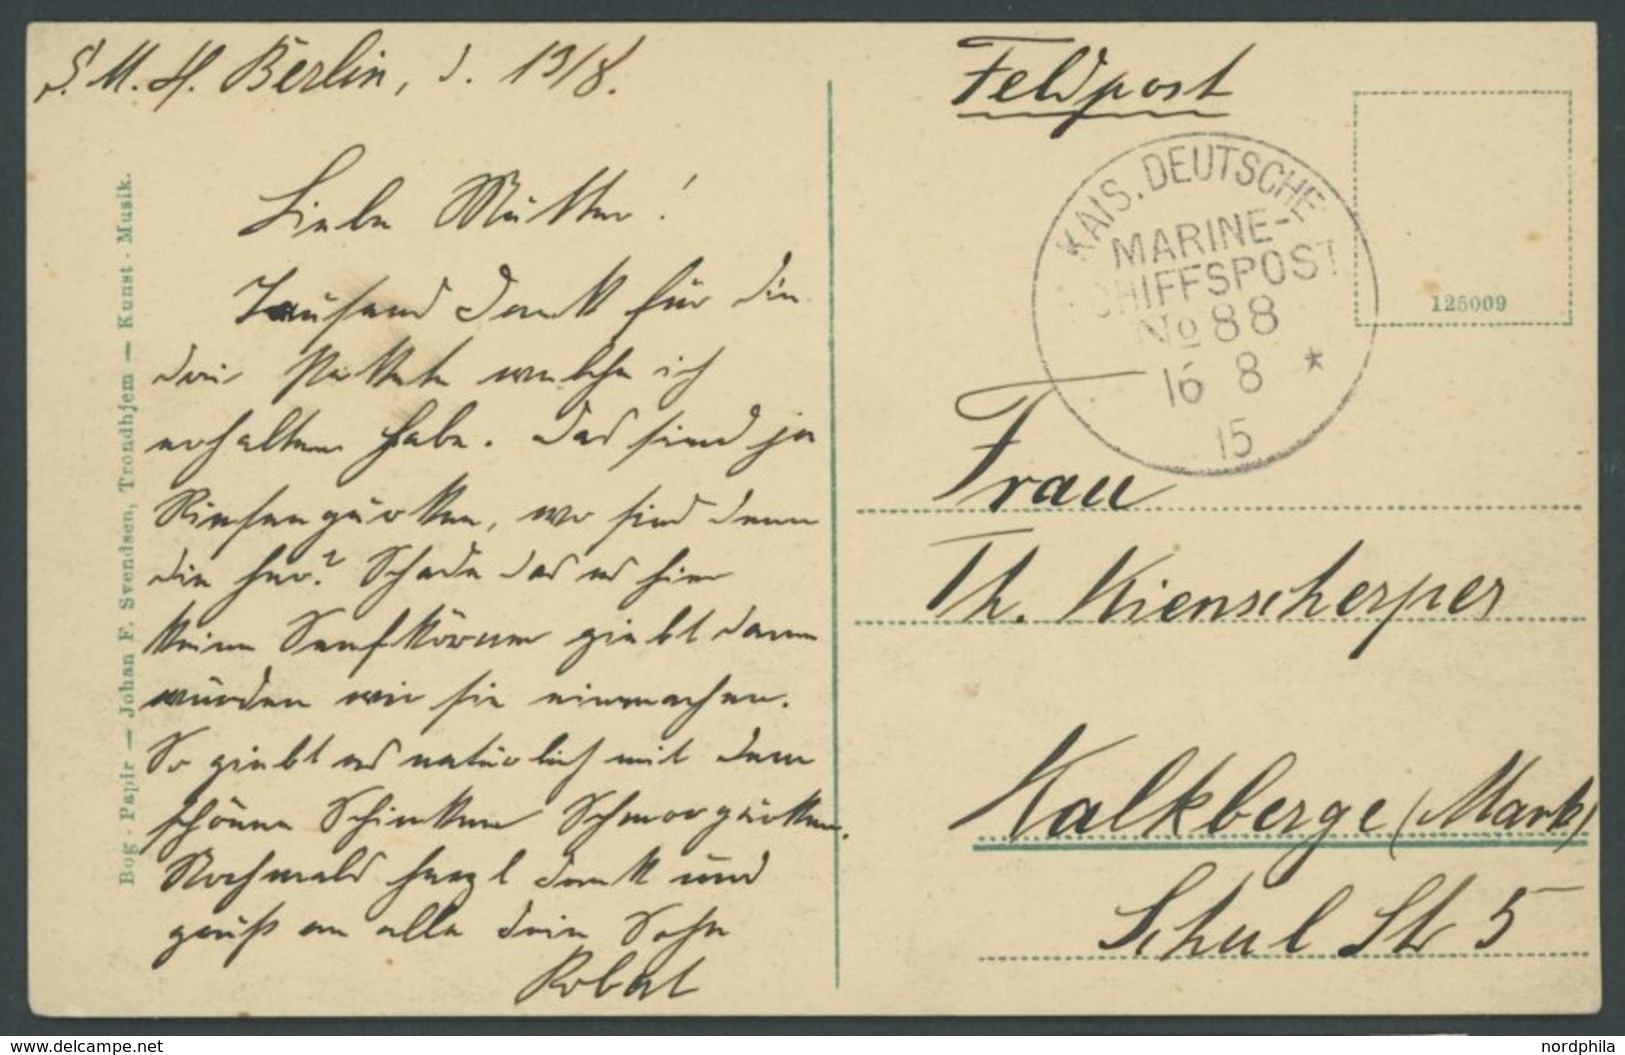 MSP VON 1914 - 1918 88 (S.M.S. BERLIN), 16.8.1915, Feldpostkarte Unzensiert Nach Kalkberge (Mark), Pracht - Maritime